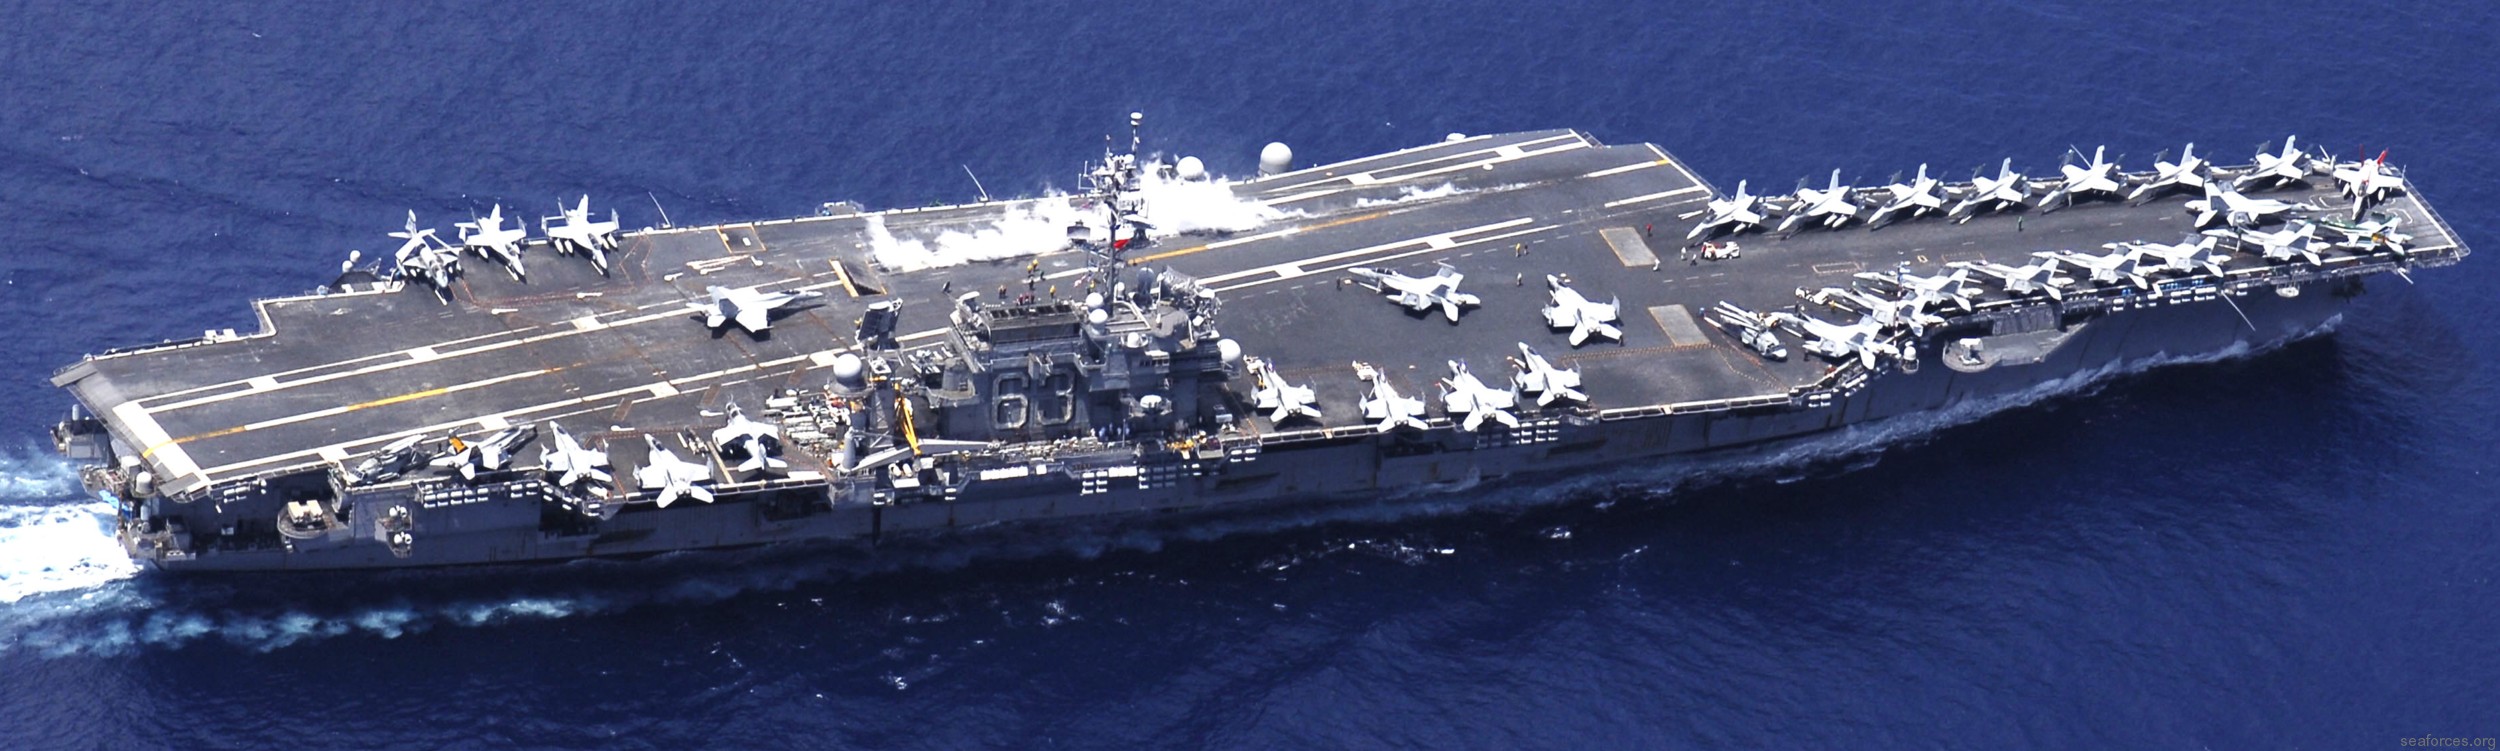 cv-63 uss kitty hawk aircraft carrier air wing cvw-5 us navy 131